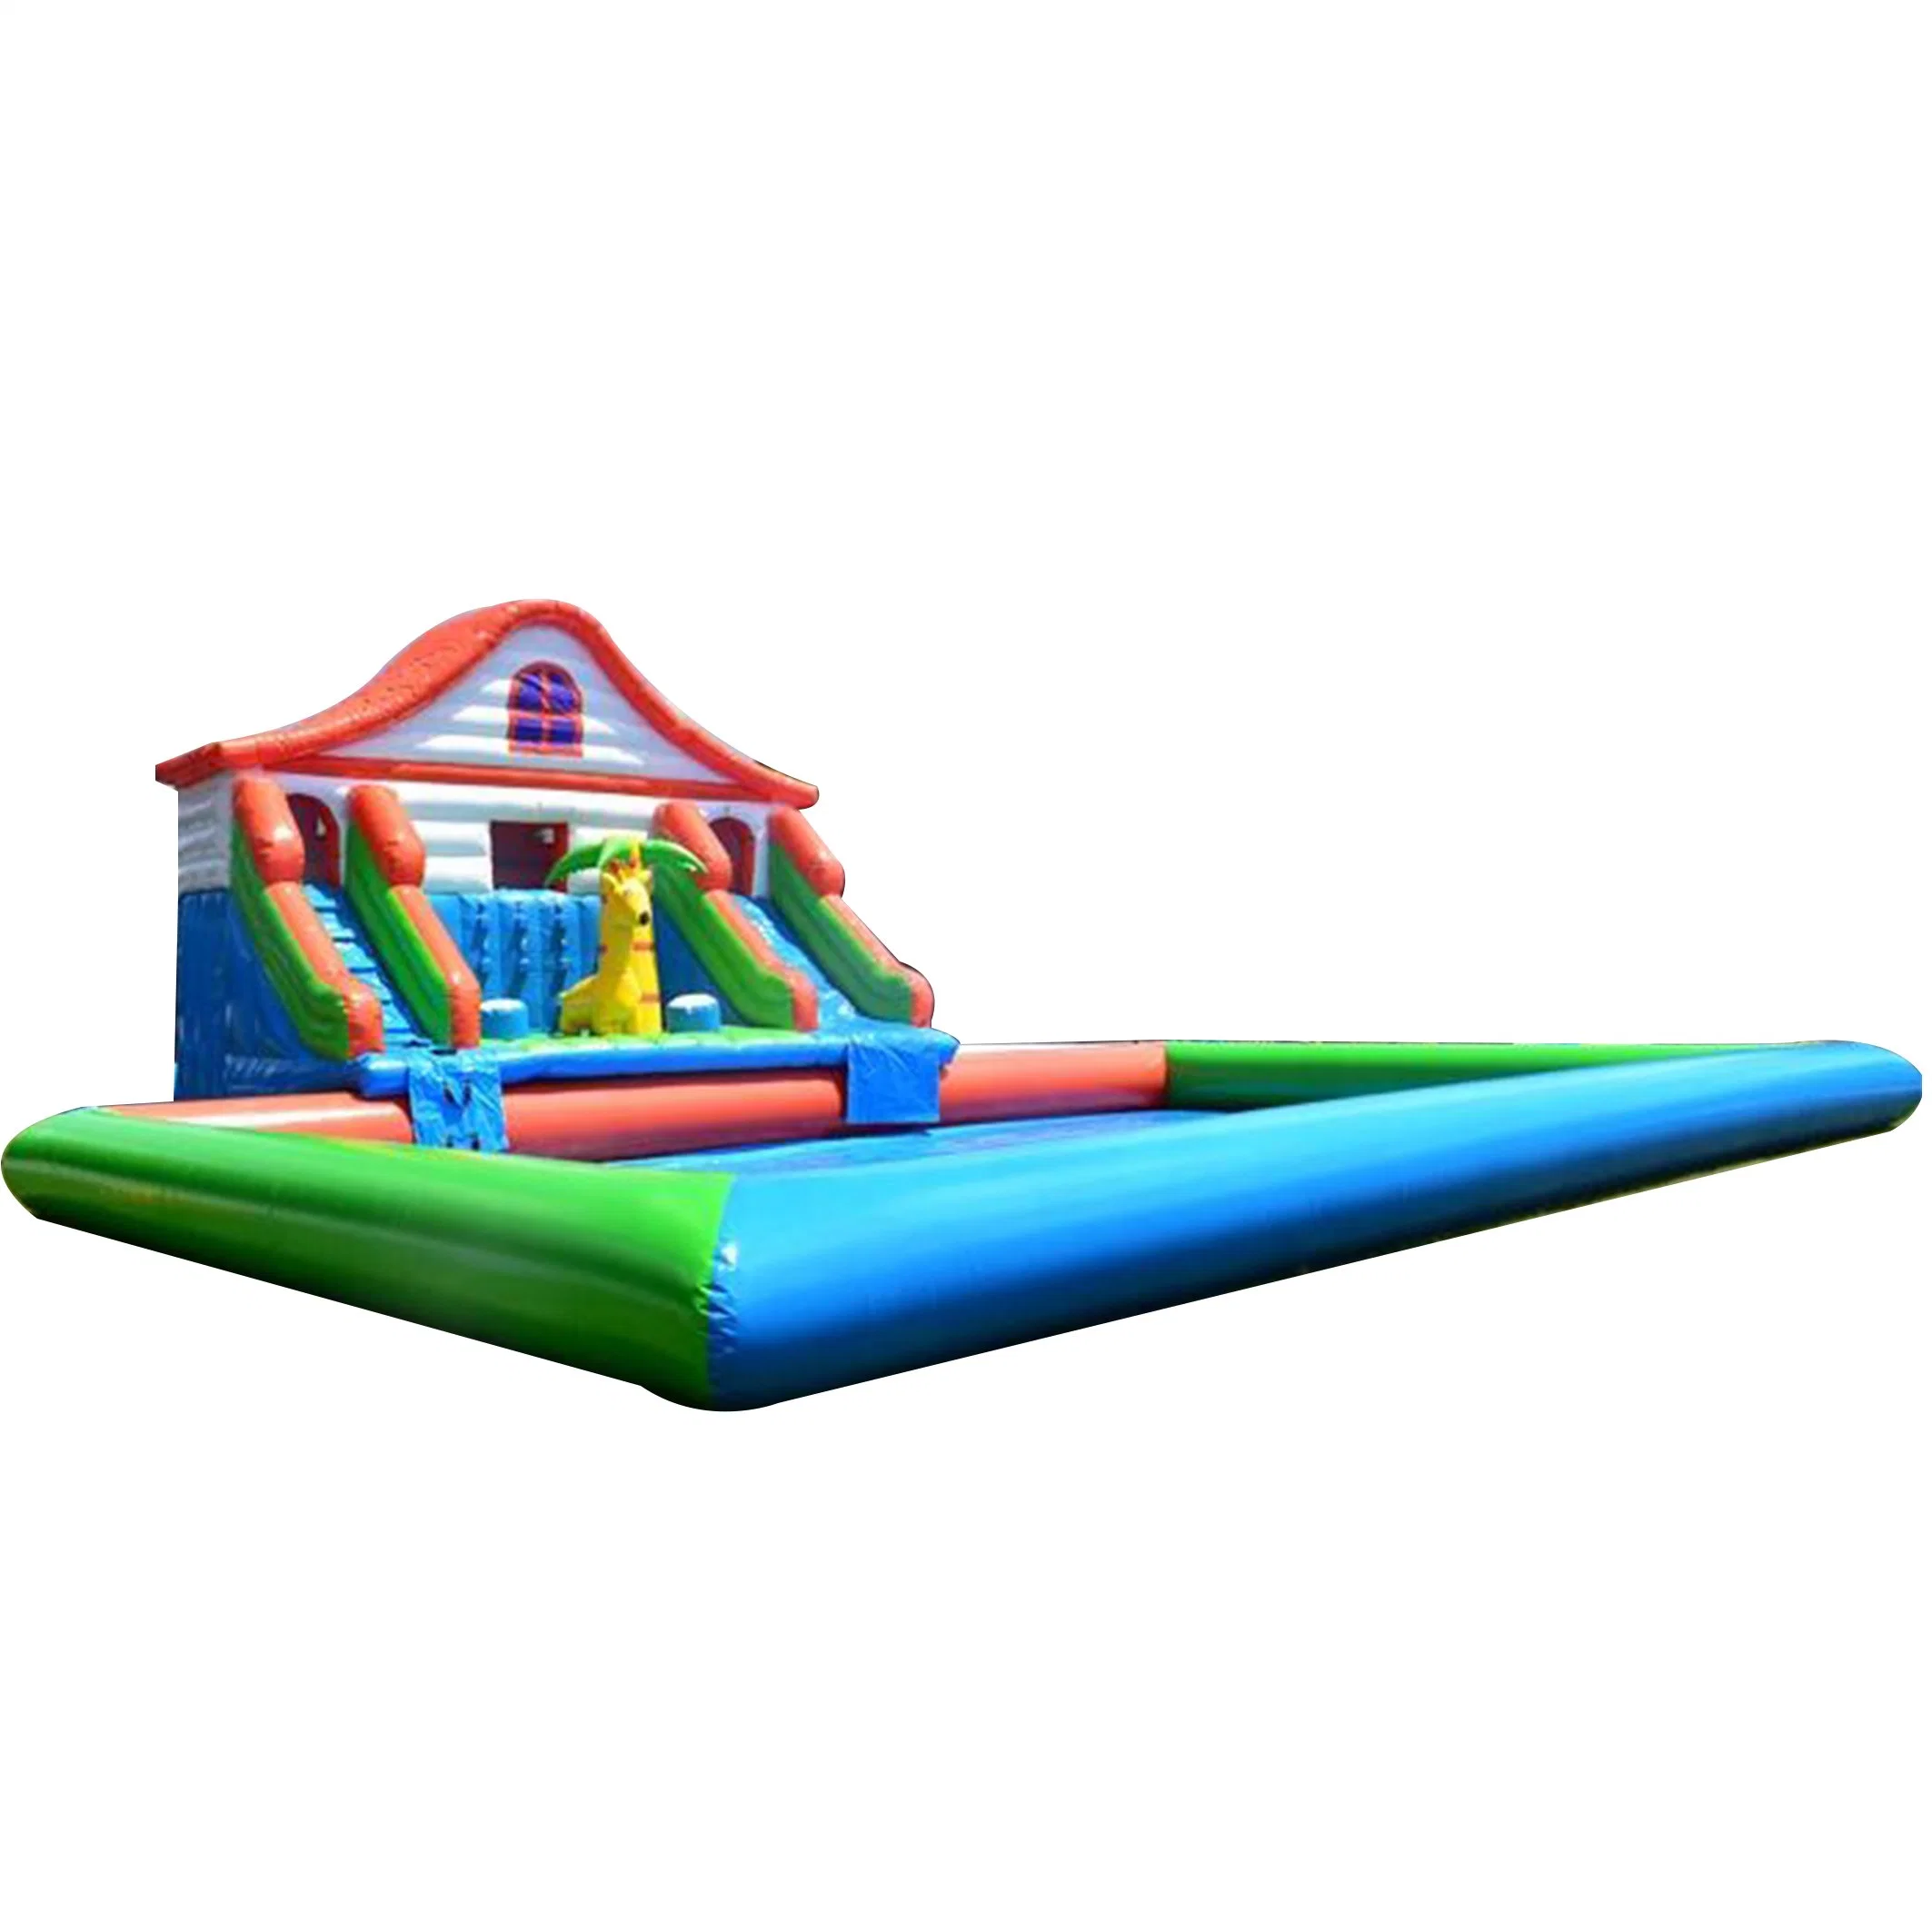 Heißer Verkauf Kinder Unterhaltung Großes Dach Aufblasbares Land Wasserpark Für Party